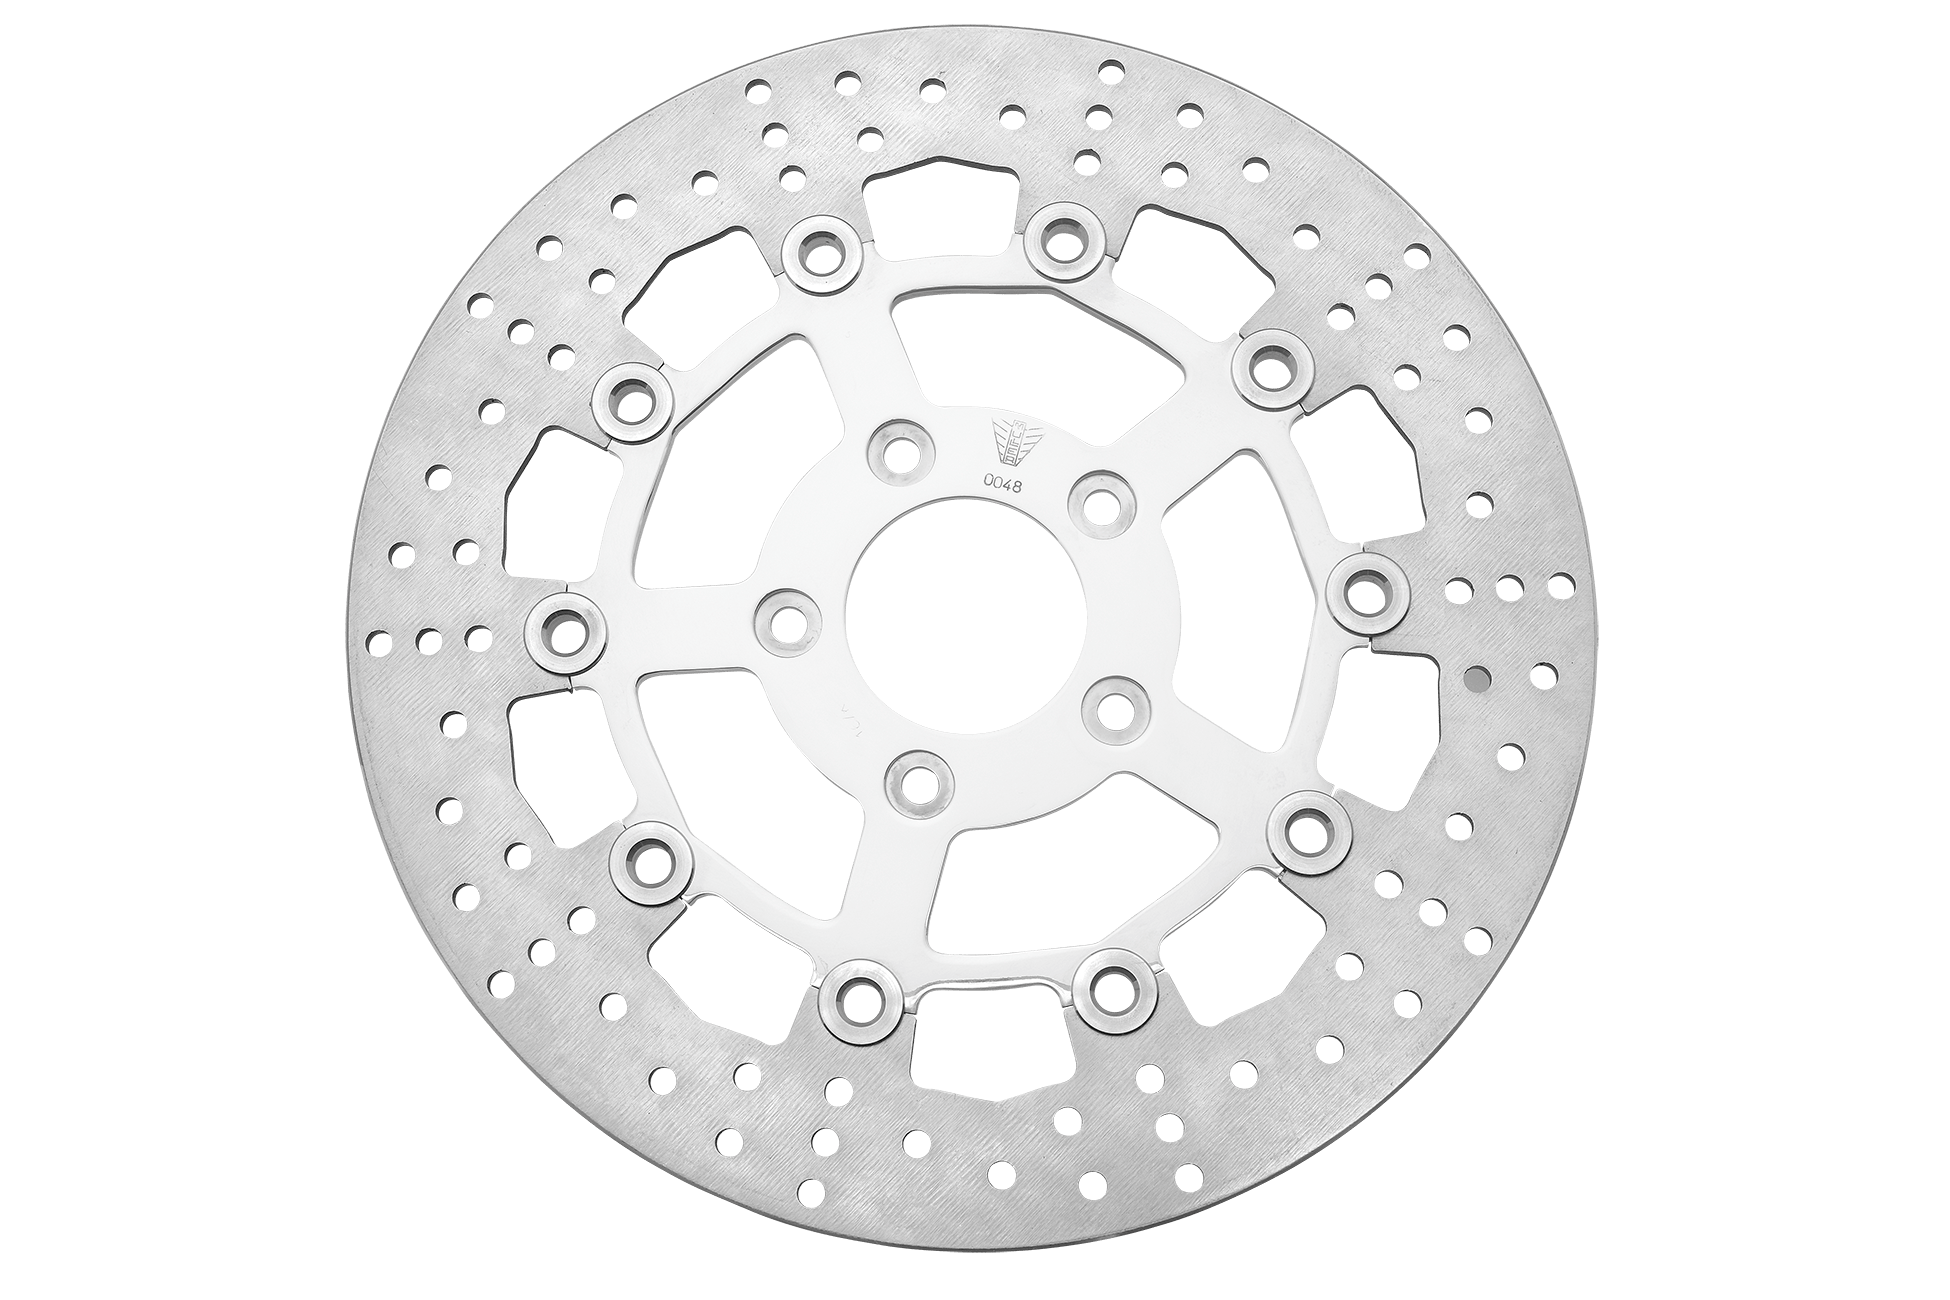 Universal 4 löcher Aluminium legierung Schwimm disk motorrad bremsscheibe  bremsbeläge 220mm motorrad Vorne disc bremse Loch